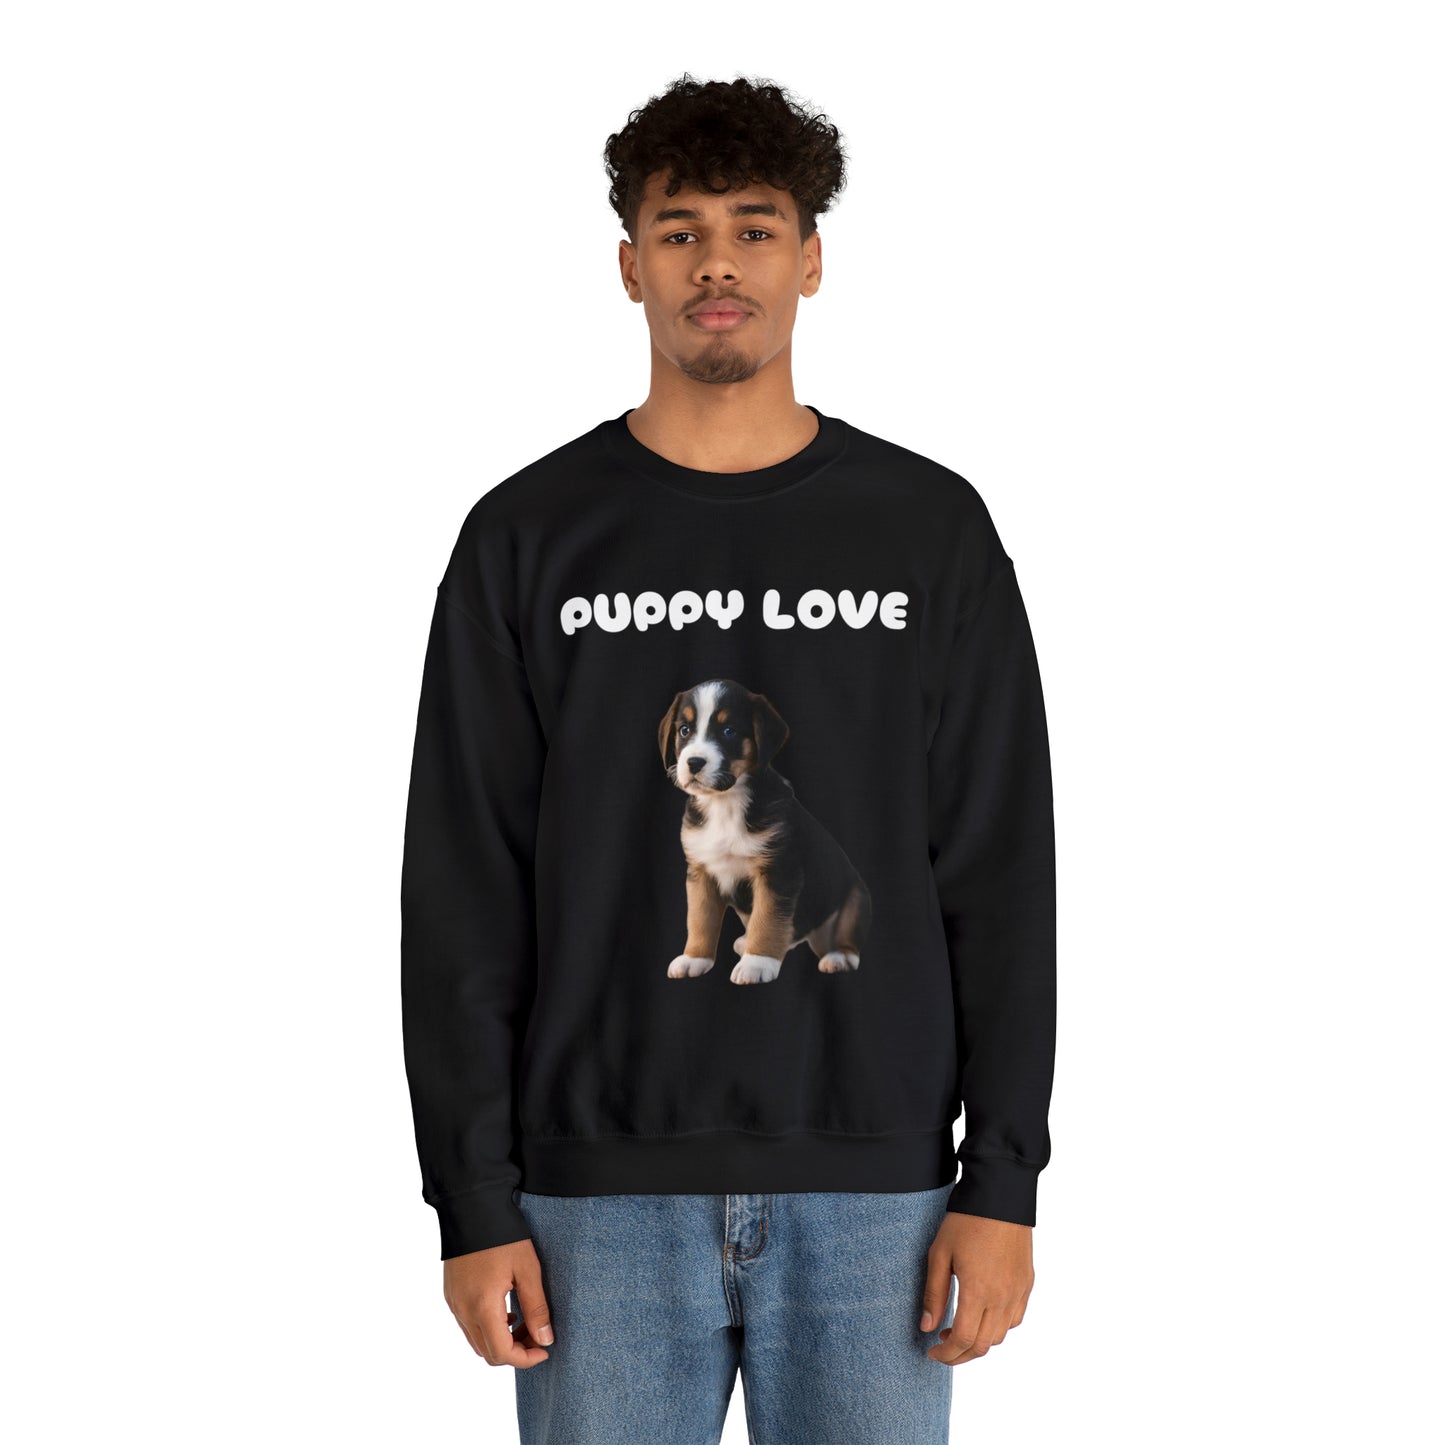 Puppy Love Puppy lovers sweatshirt gift